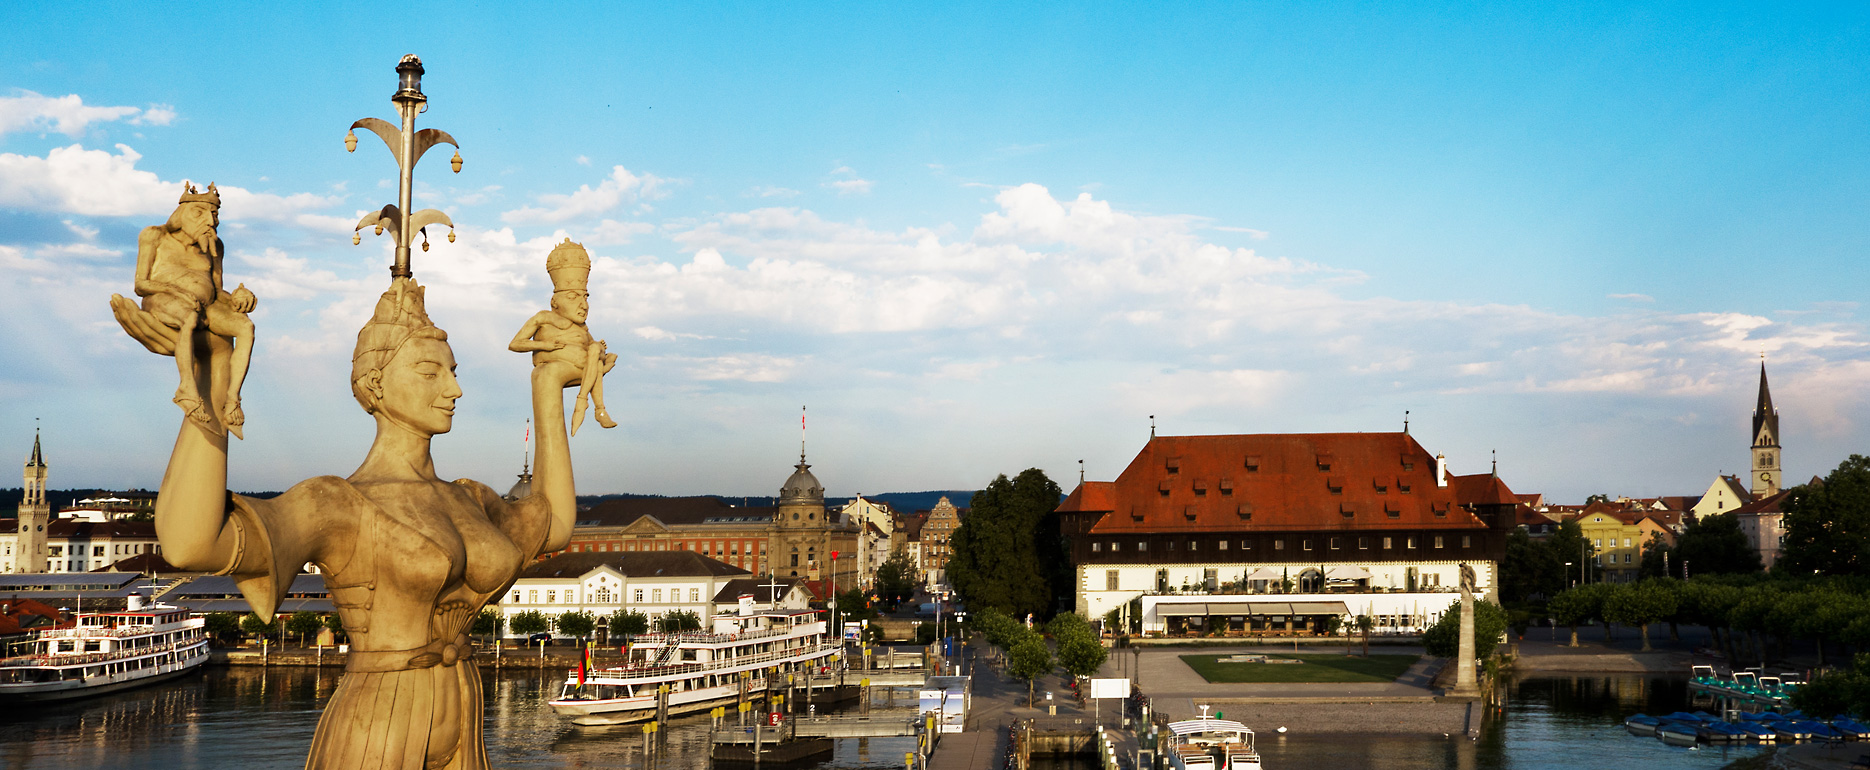 Die Imperia und das Konzil-Gebäude am Hafen von Konstanz